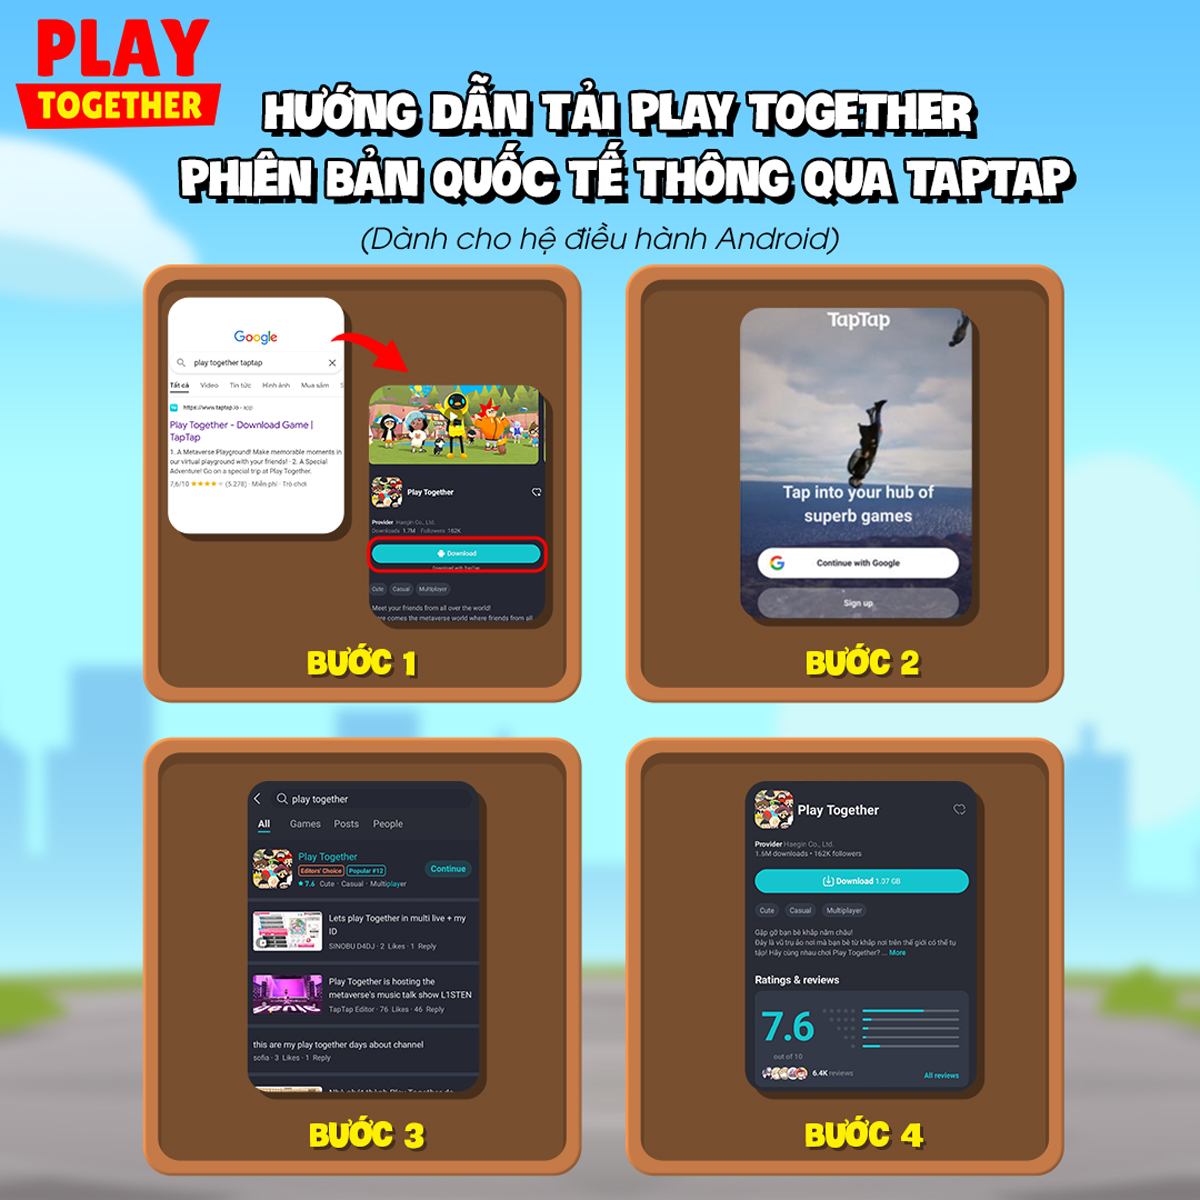 Thực hiện ngay 6 bước chuyển Play Together bản Quốc Tế sang bản Play Together VNG dưới đây vào ngày 30 tháng 6 để nhận 500KC | Play Together VNG | Play Together VNG Mobile 